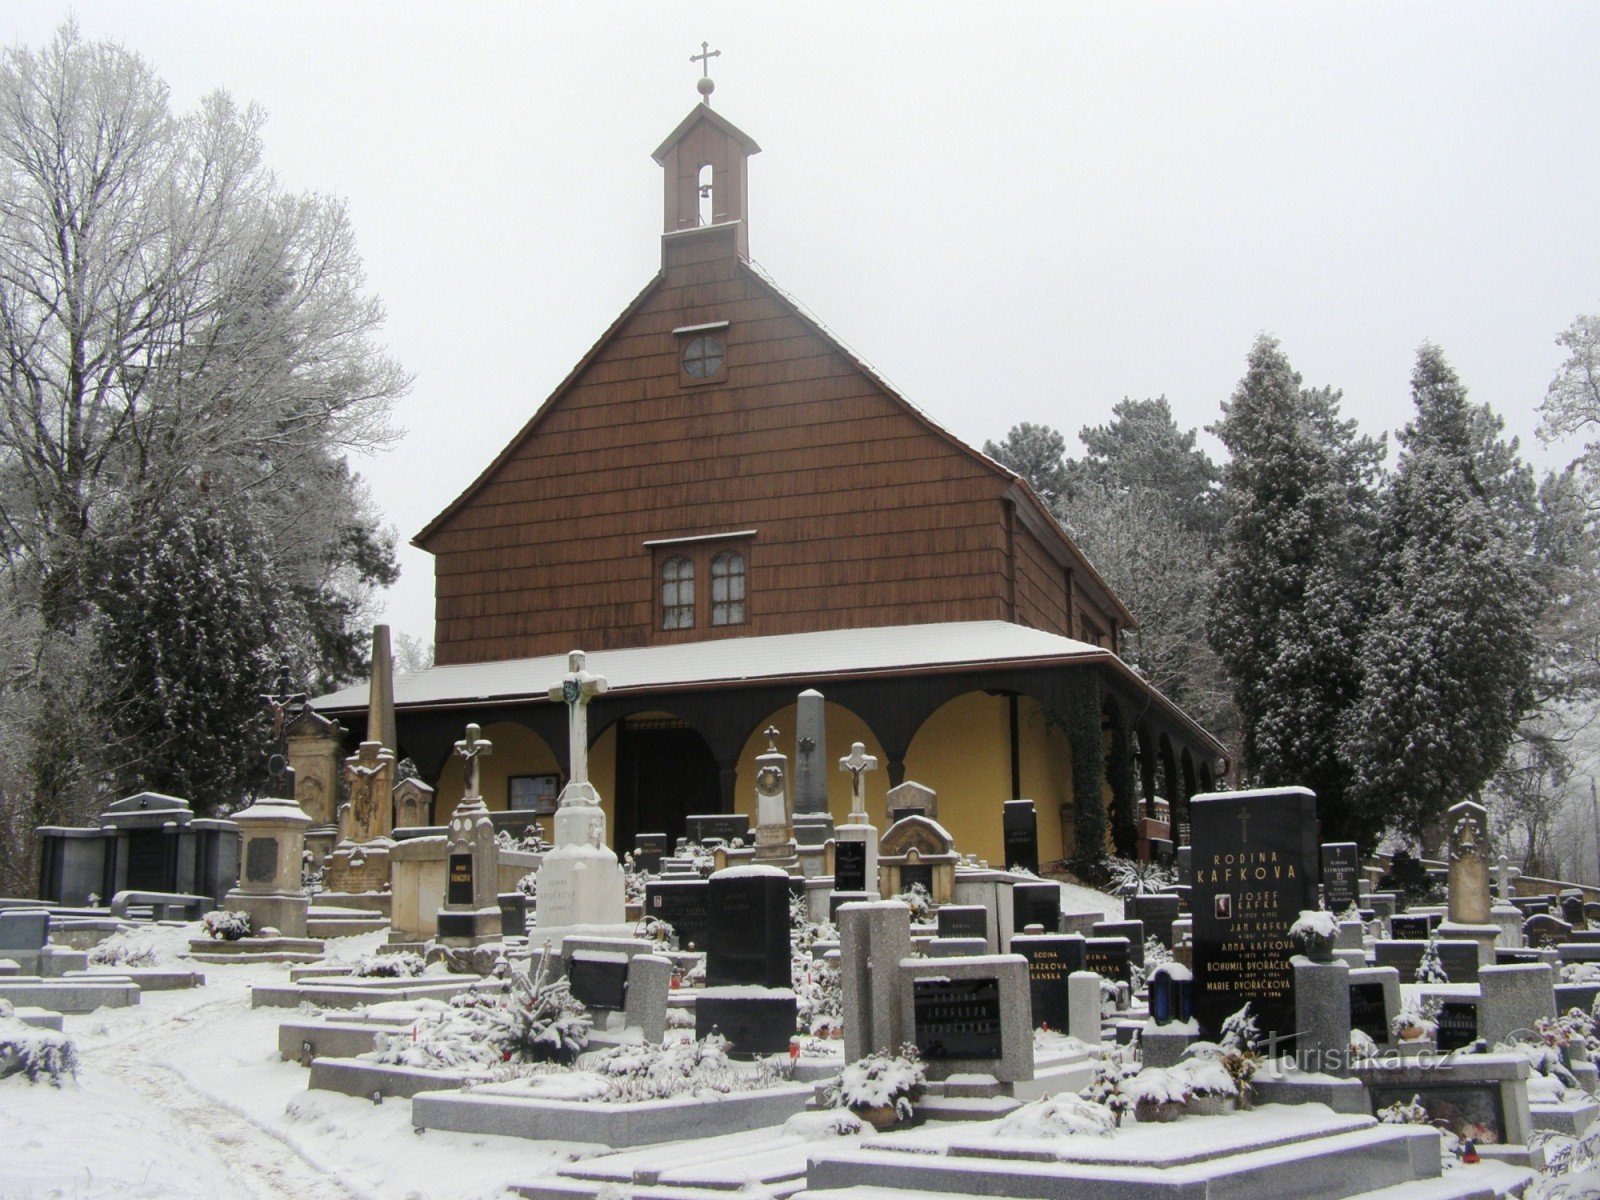 crkva sv. Ivana Krstitelja u Nové Hradec Králové